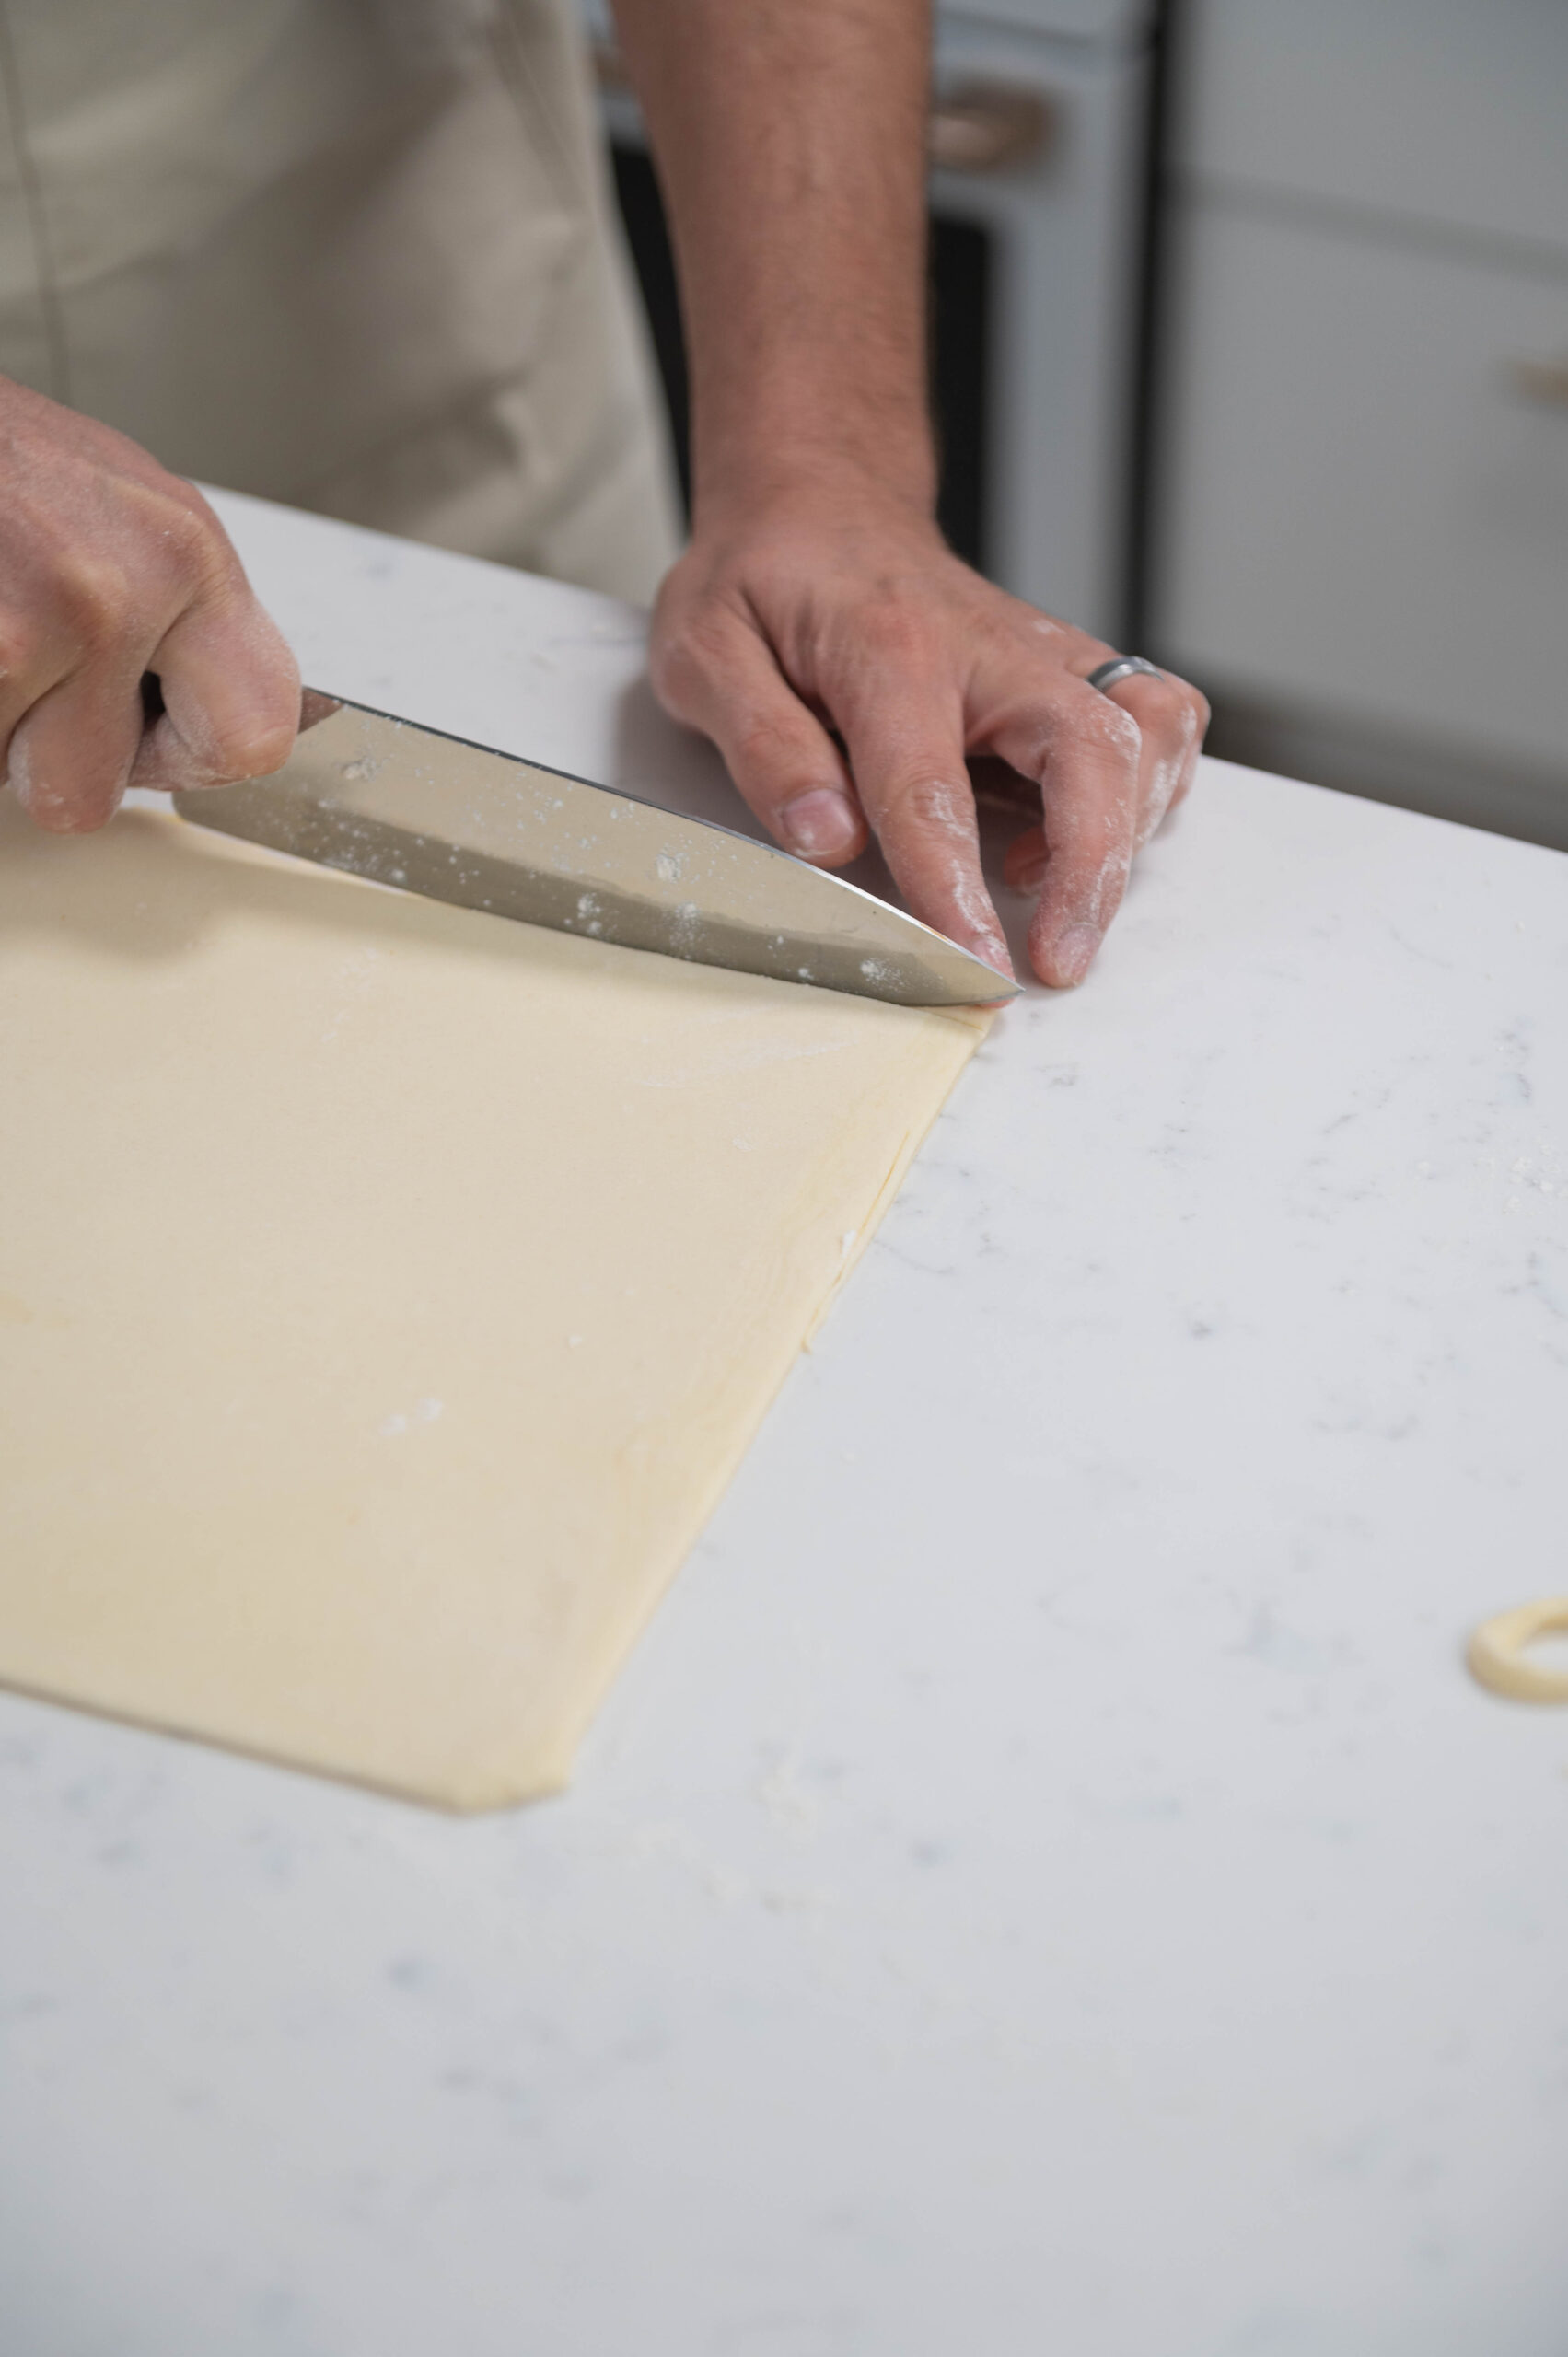 hands using knife to trim dough.